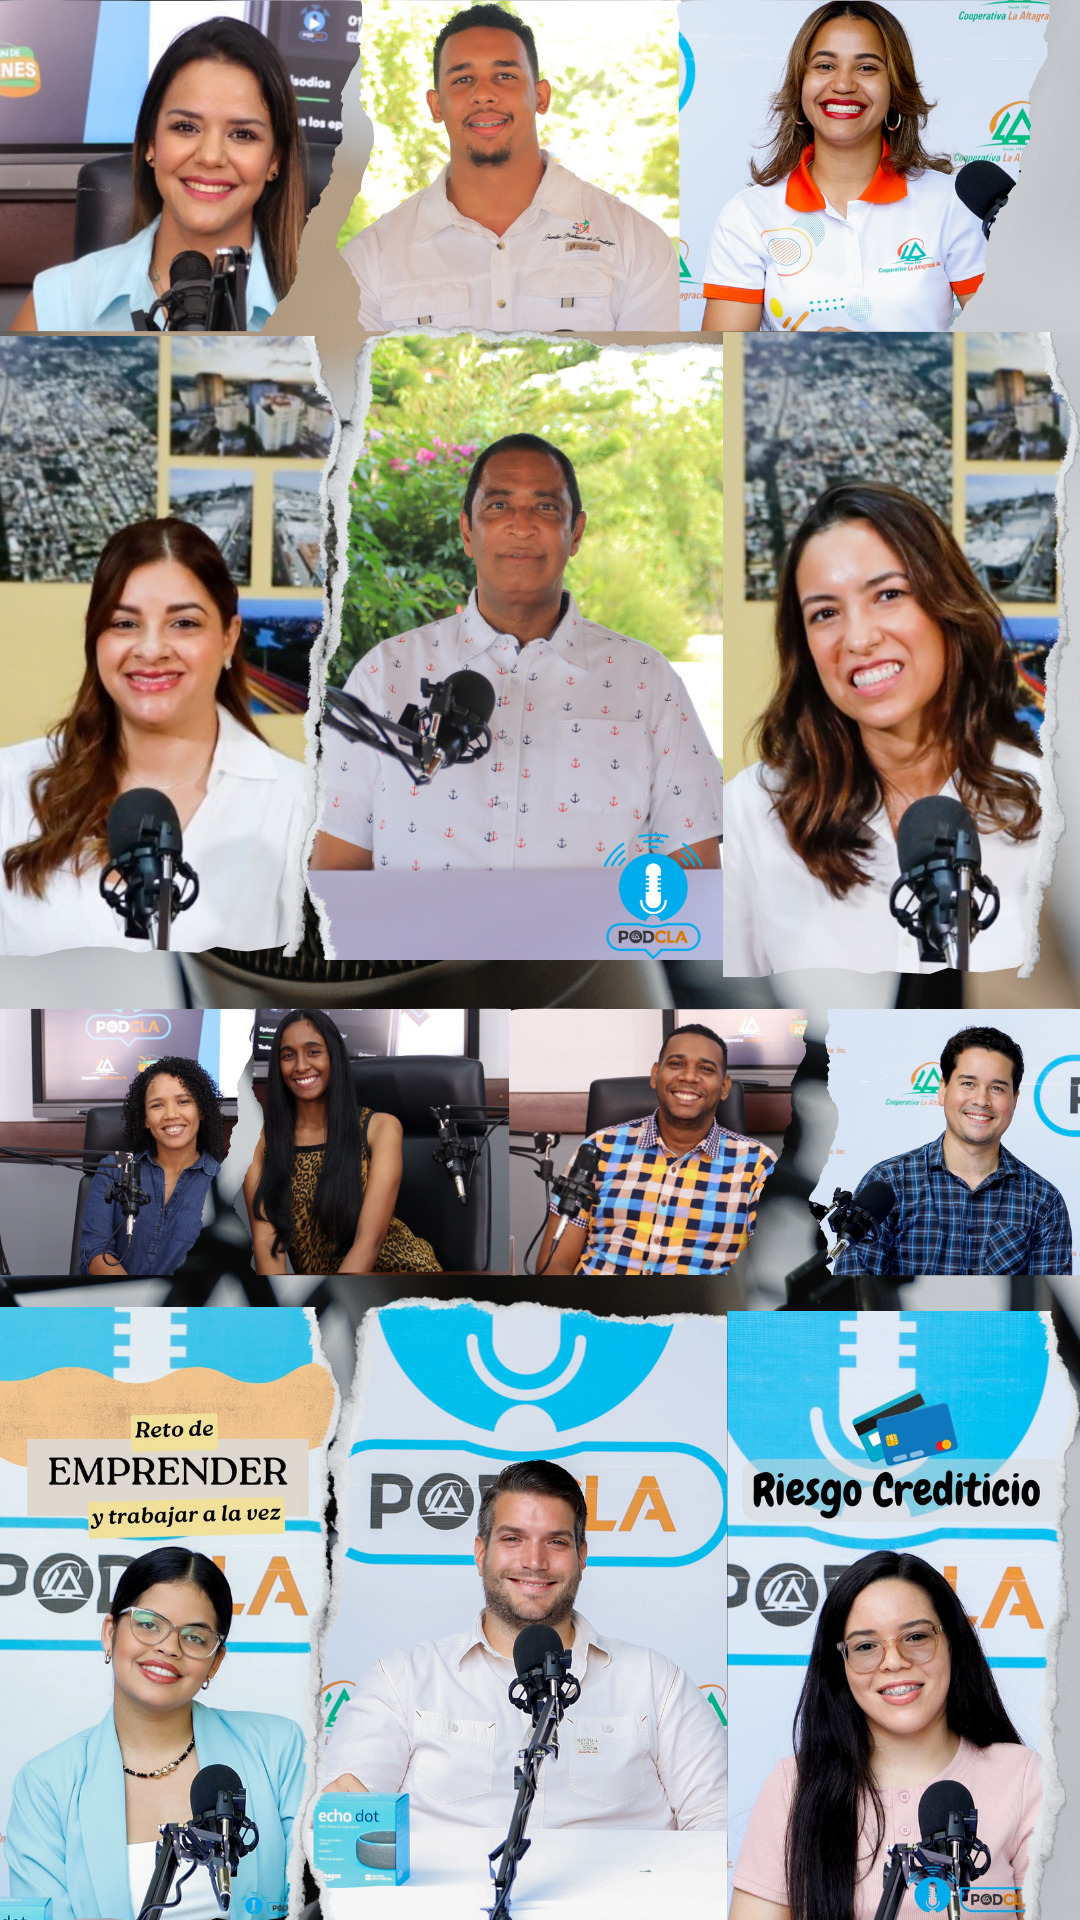 PODCLA: El Primer Podcast de una Cooperativa en República Dominicana